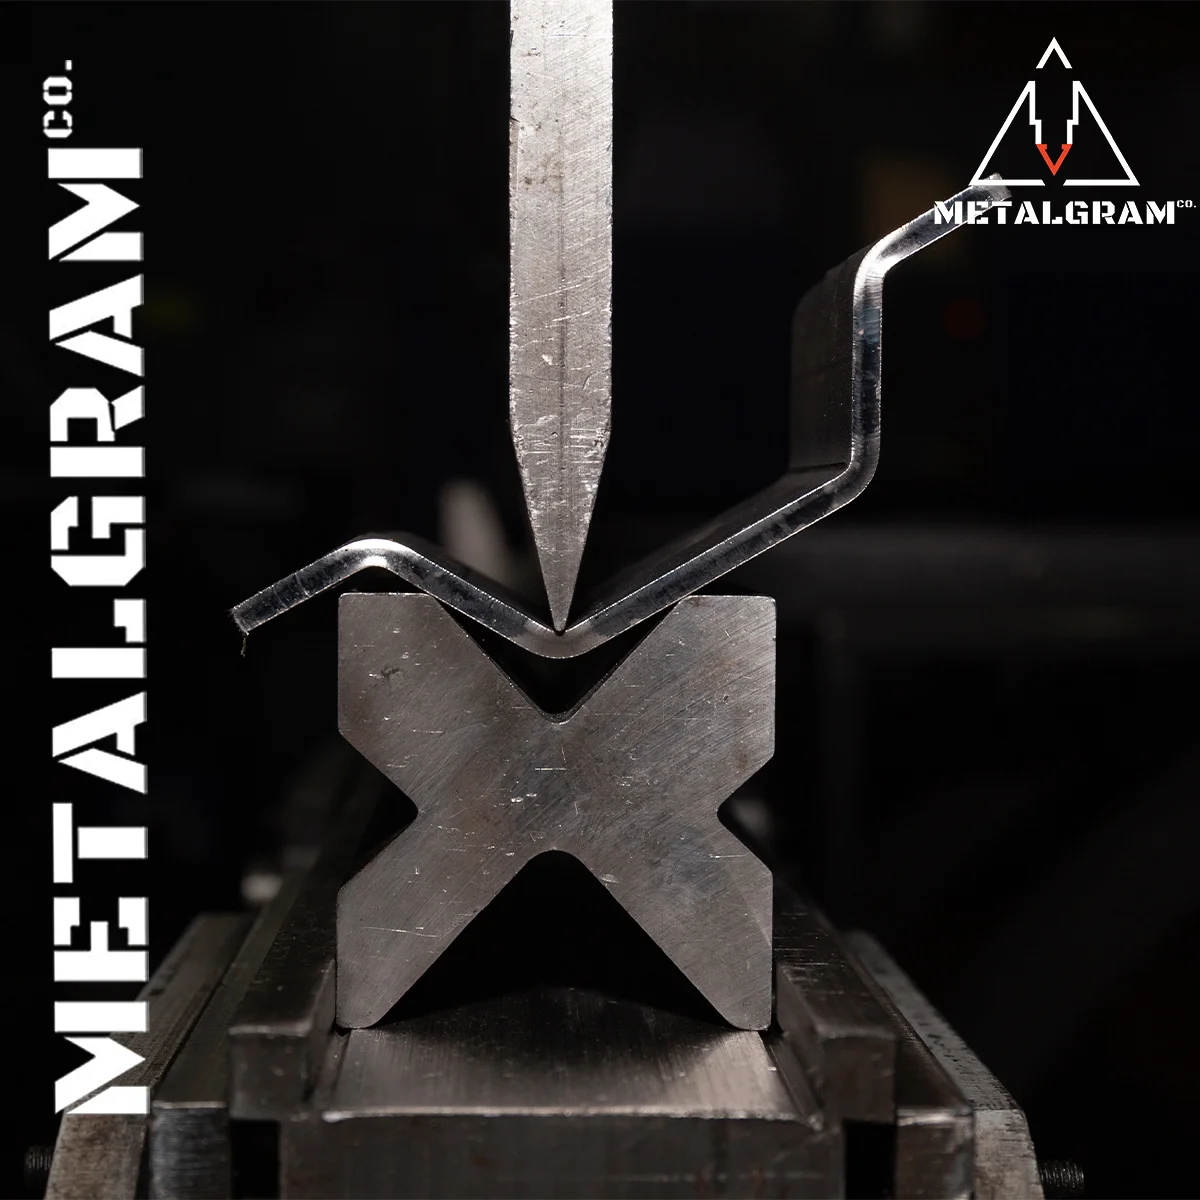 Metalgram-Social Media Marketing